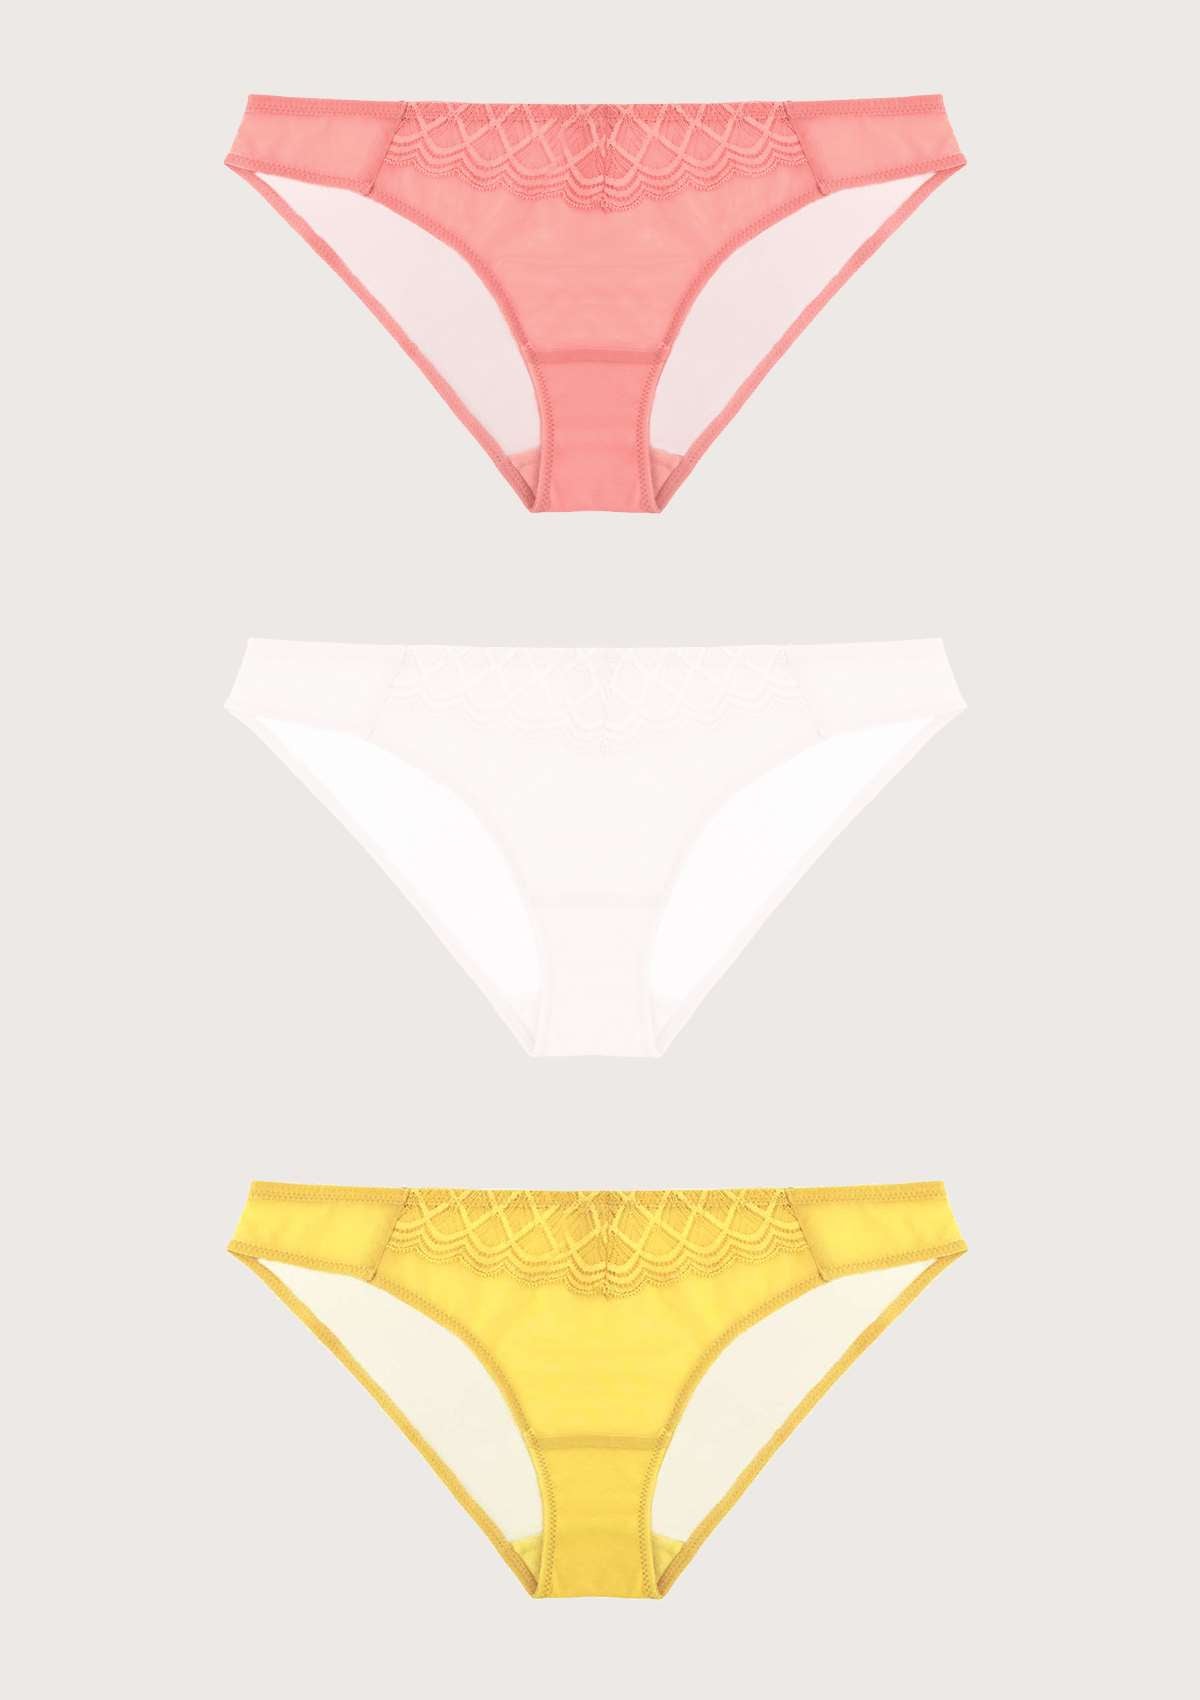 HSIA Plaid Lace Bikini Panties 3 Pack - XL / Black+Yellow+Pink